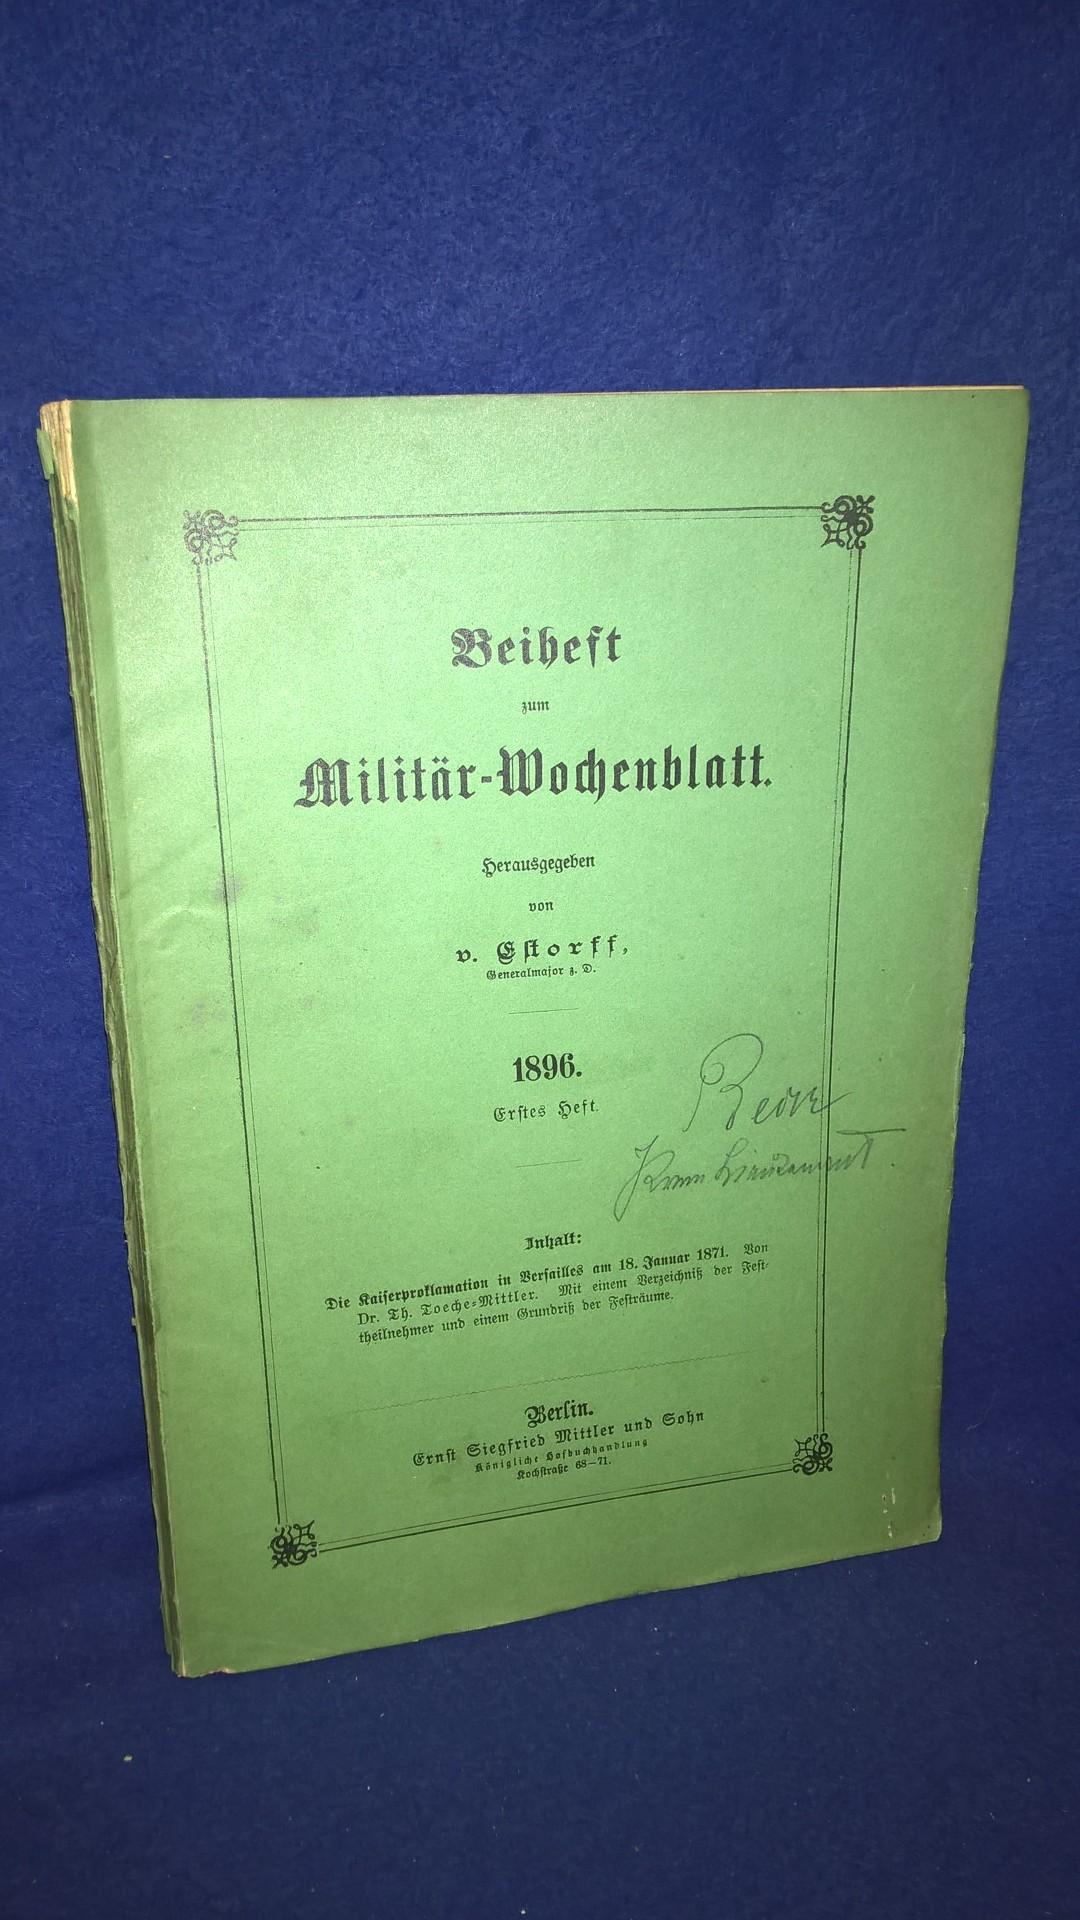 Beiheft zum Militär-Wochenblatt, 1.Heft, 1896. Aus dem Inhalt: Die Kaiserproklomation in Versailles am 18.Januar 1871.